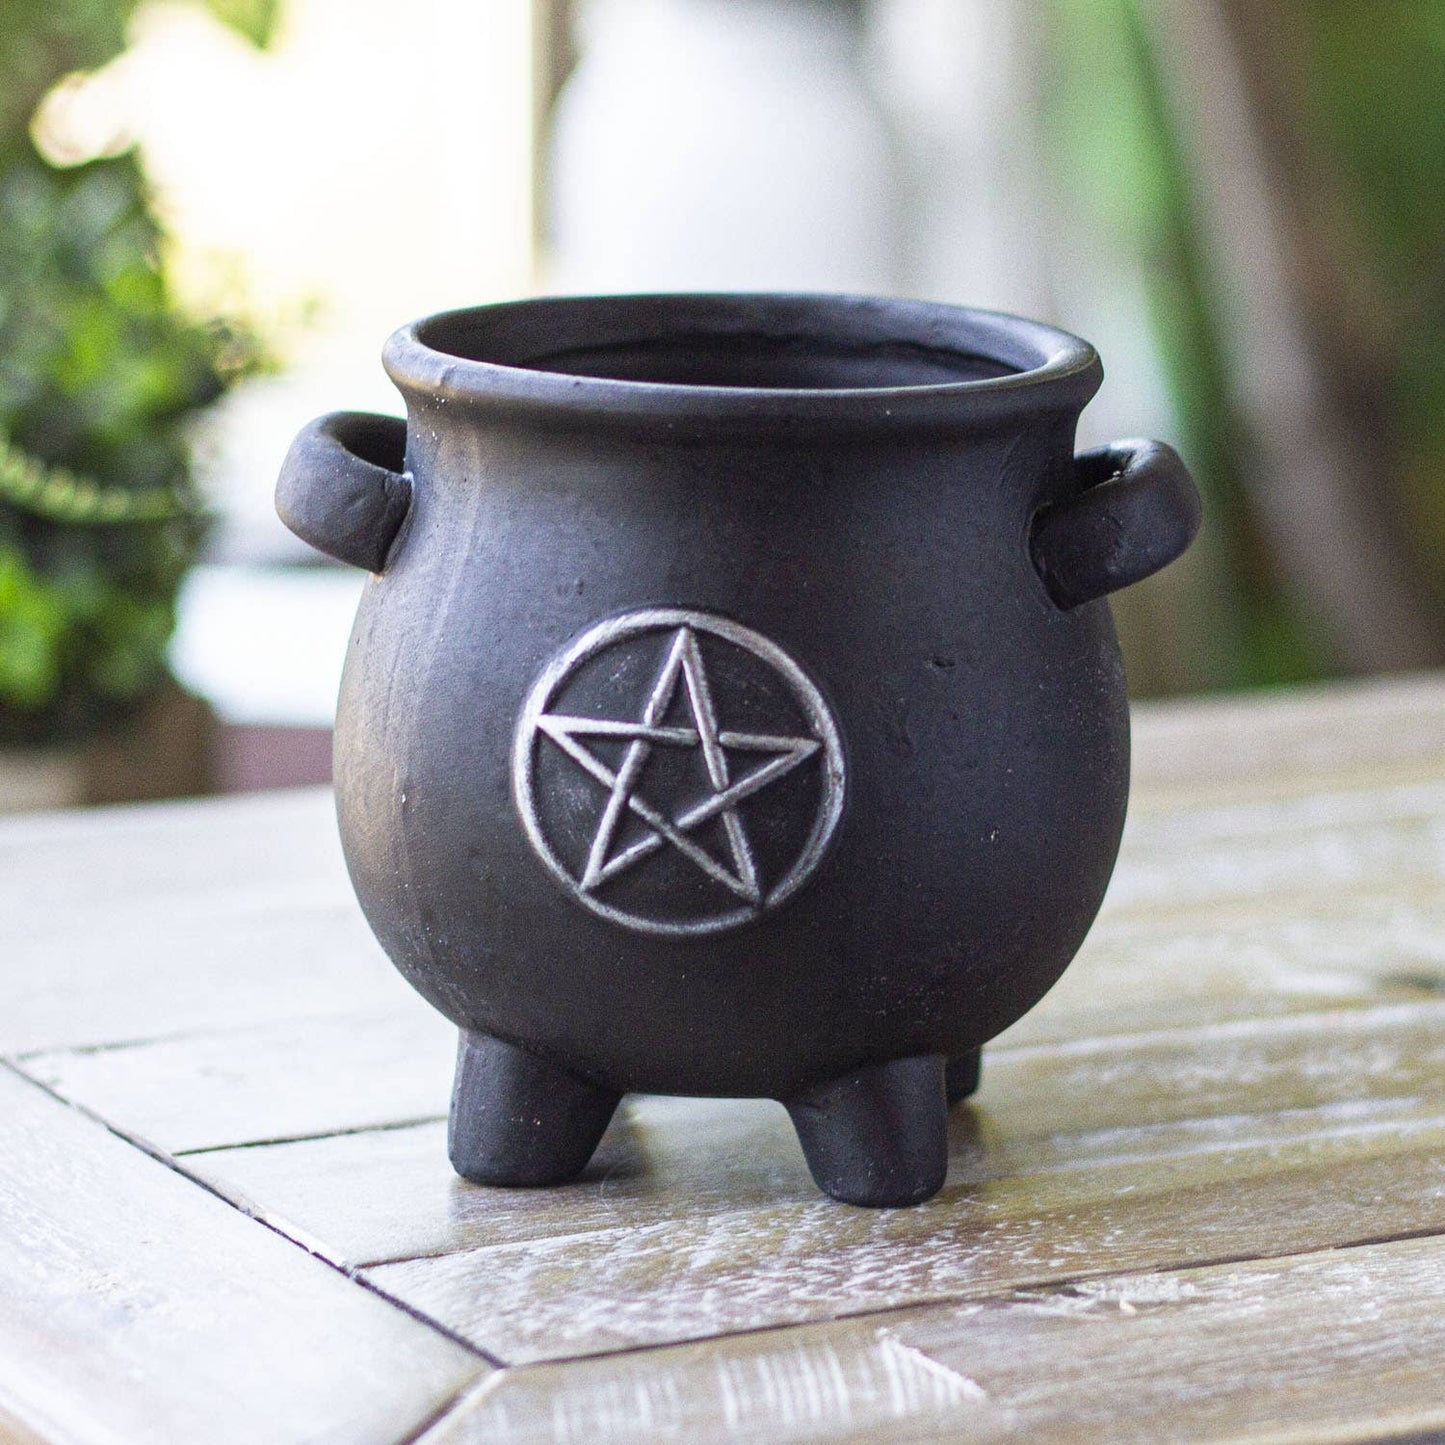 14198 Cauldron Pentagram Planter Pot C/12